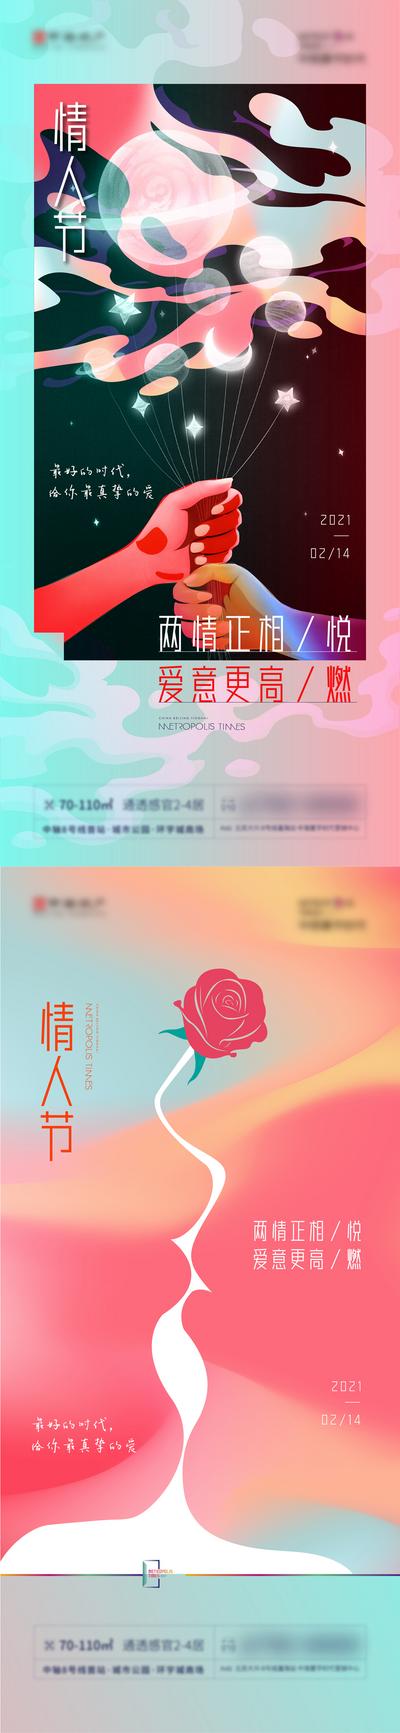 南门网 海报 公历节日 情人节 插画 月亮 玫瑰 剪影 系列